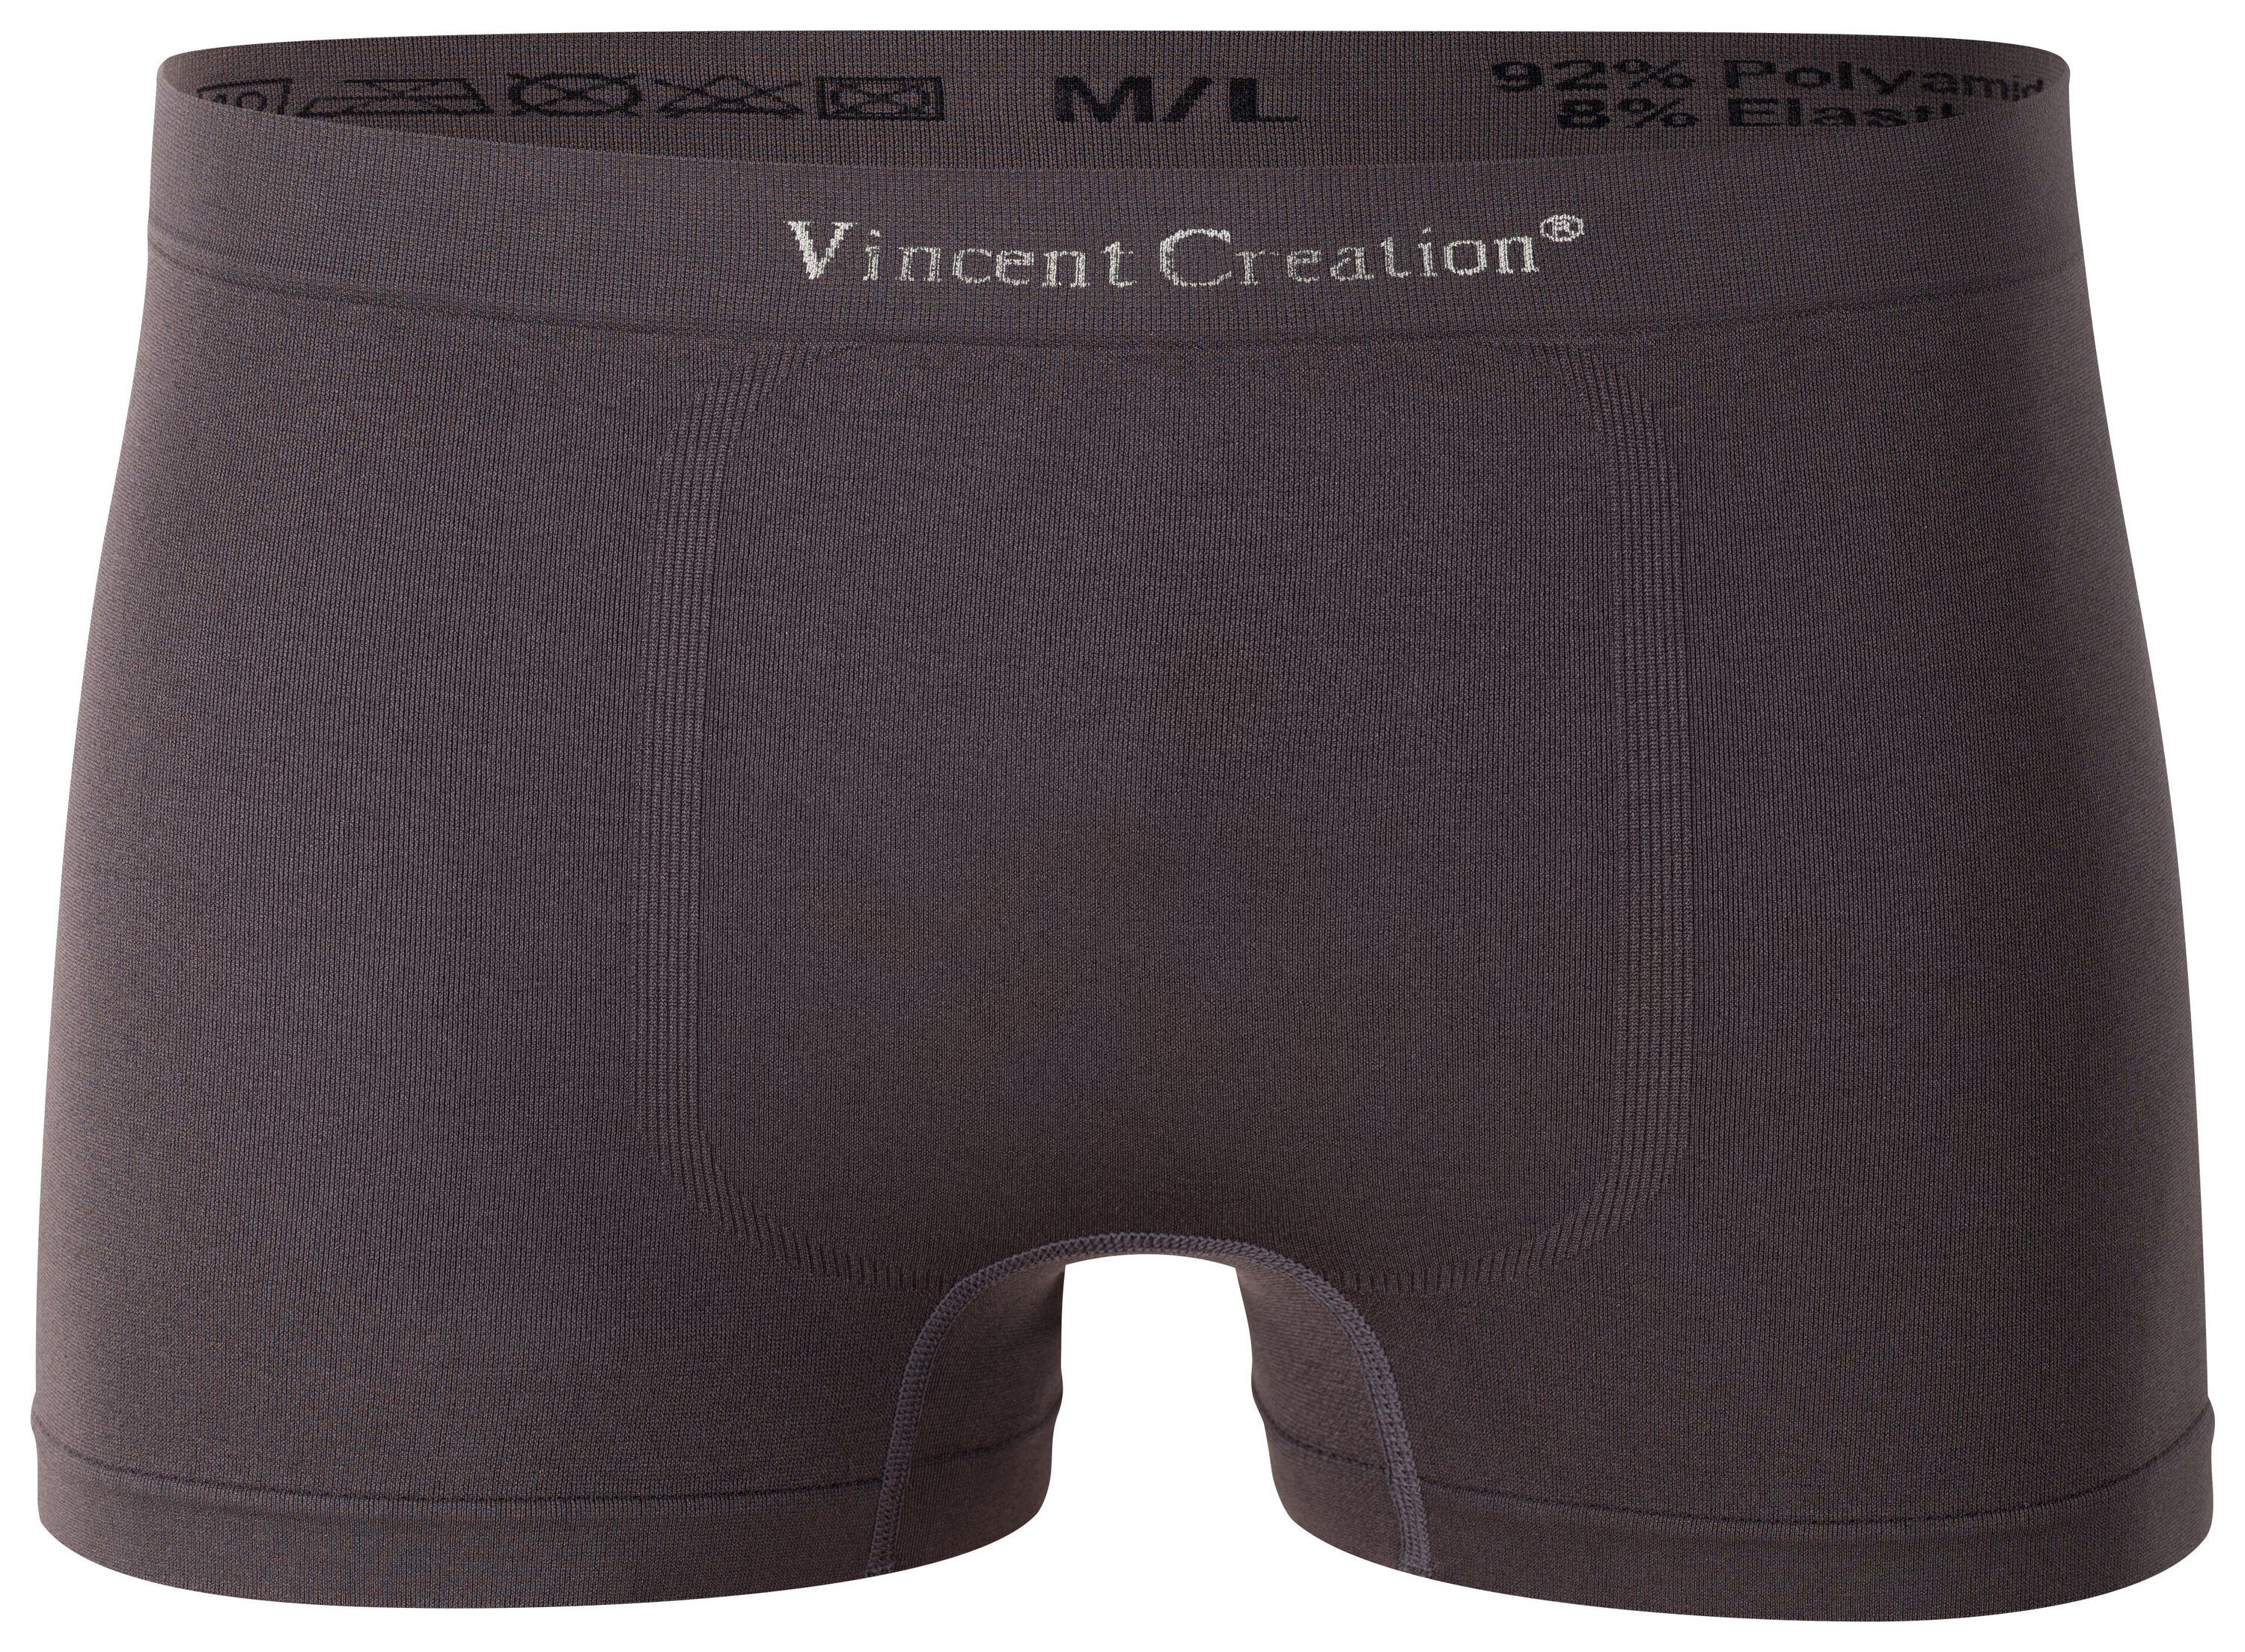 Vincent Creation® Microfaser 12er Boxershorts - (12-St) Seamless schw/khaki/grau Pack, weiche Microfaser-Qualität